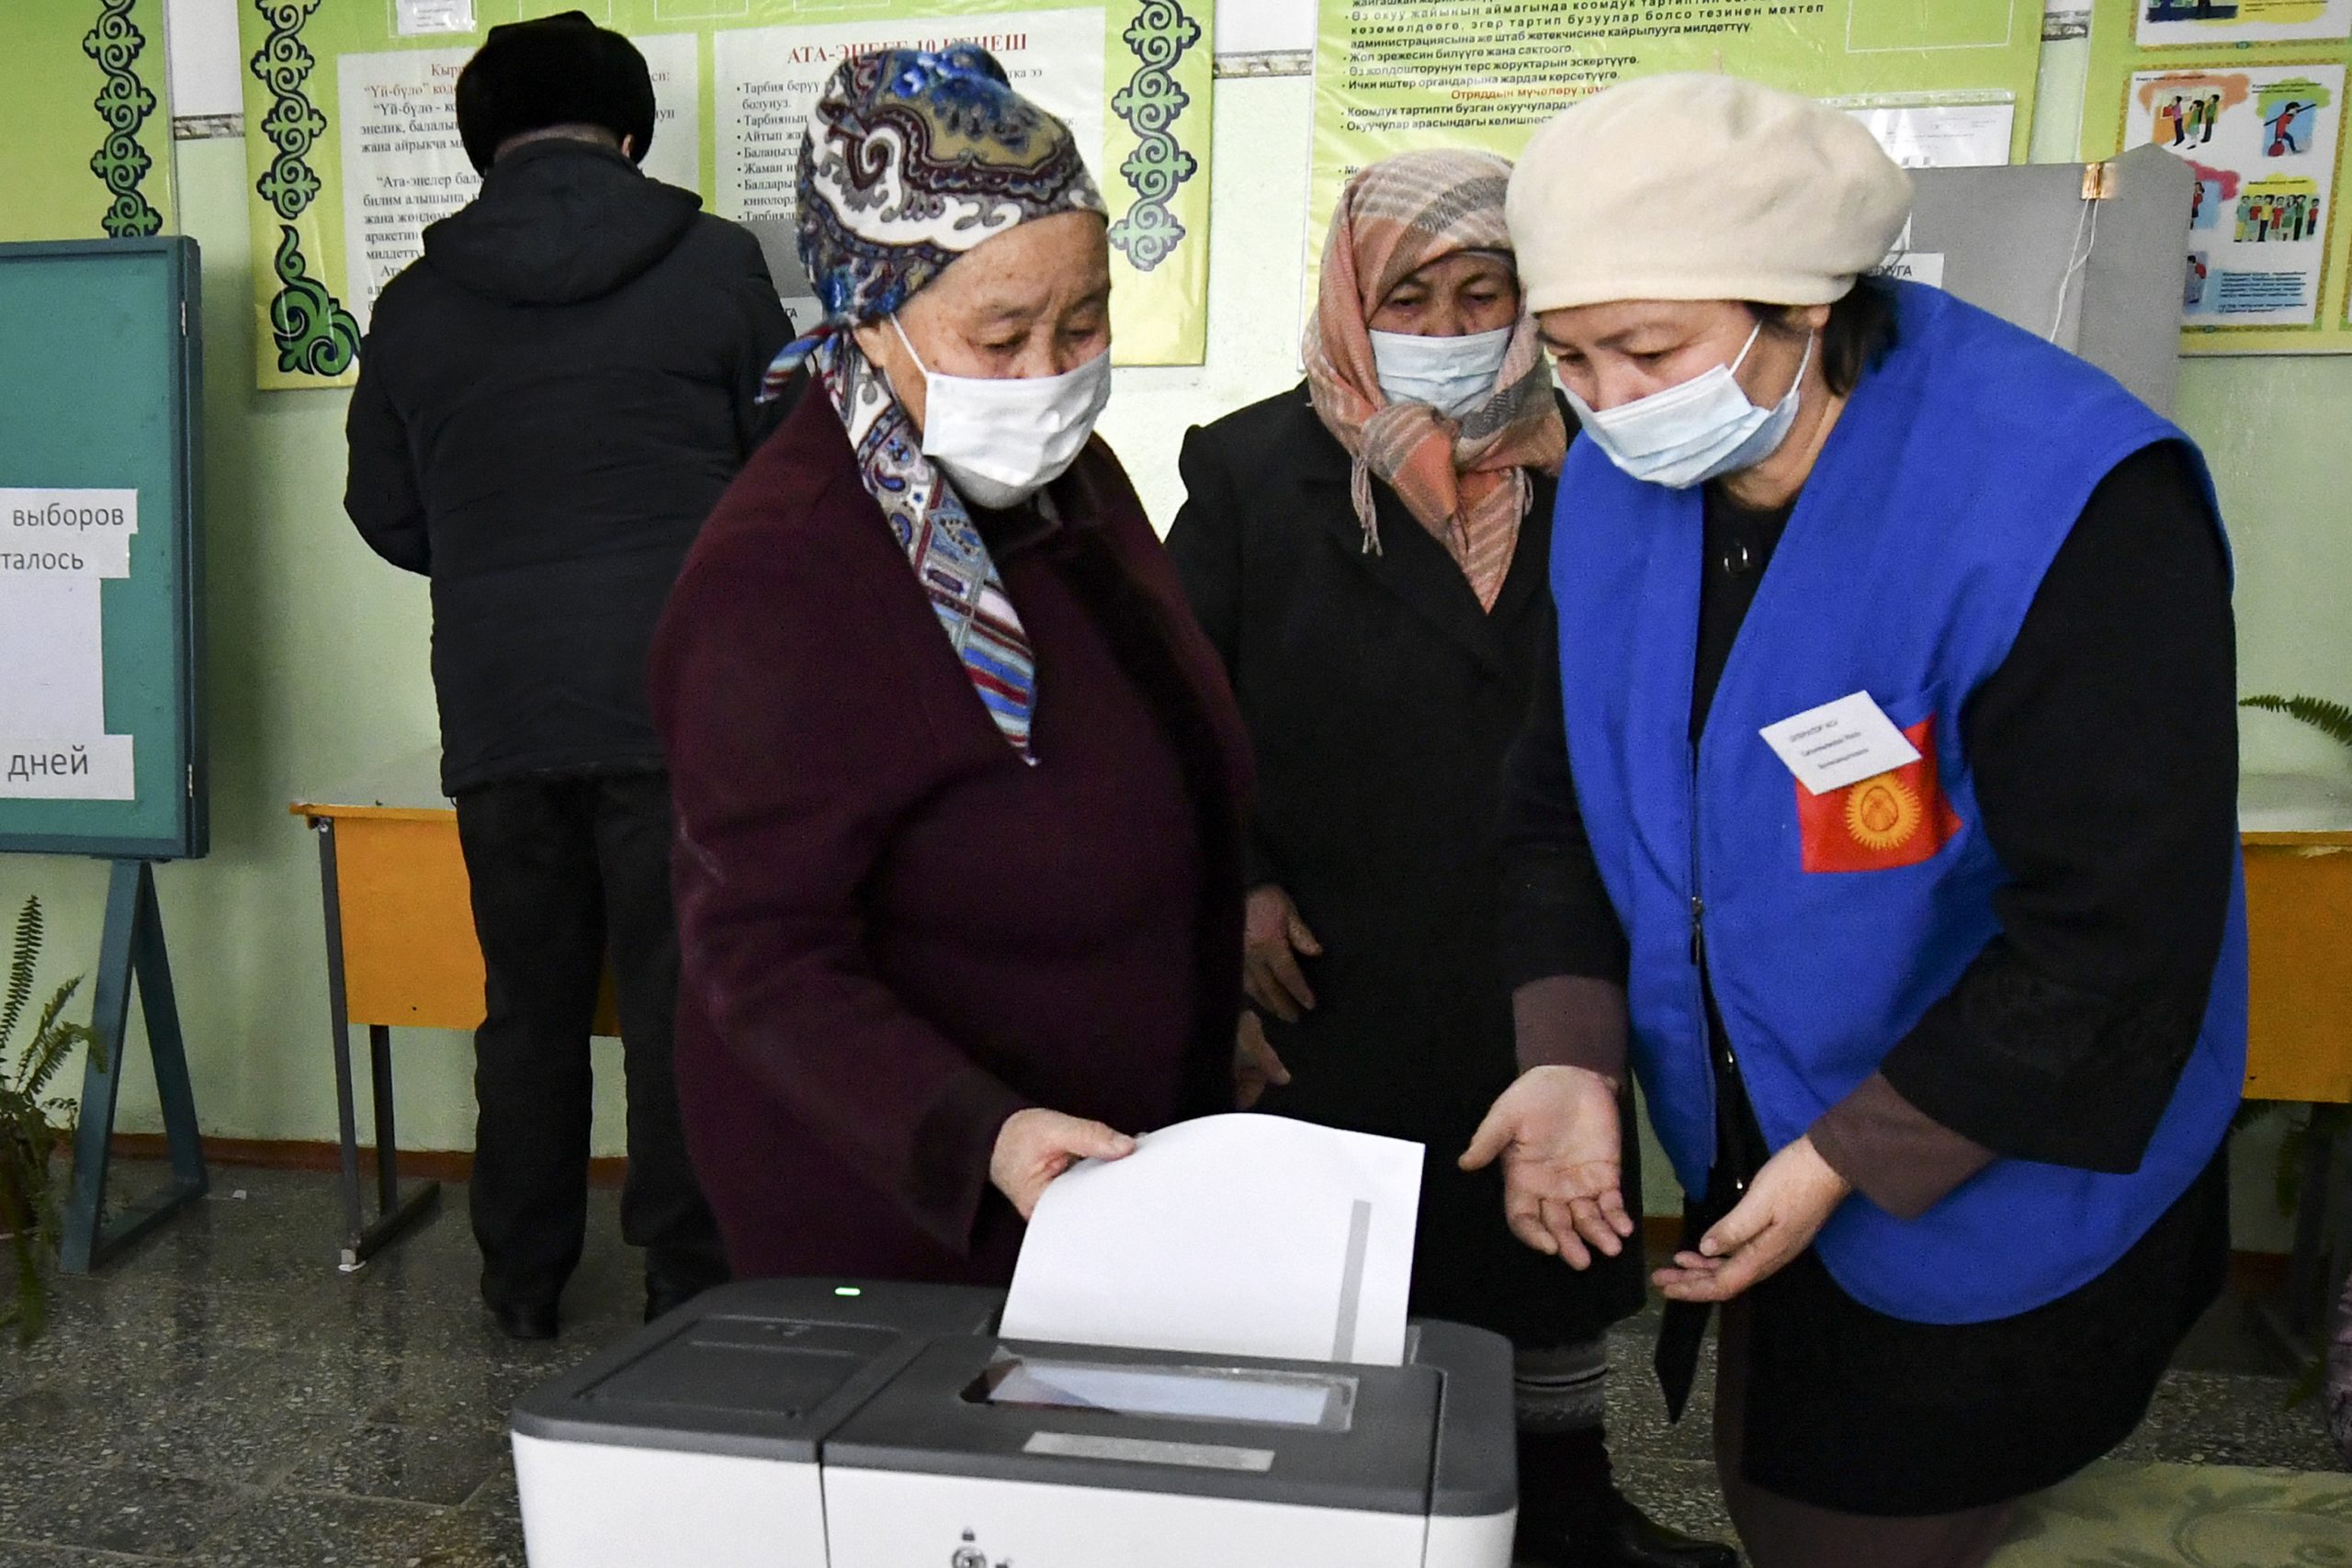 Predsednički izbori u Kirgistanu 1